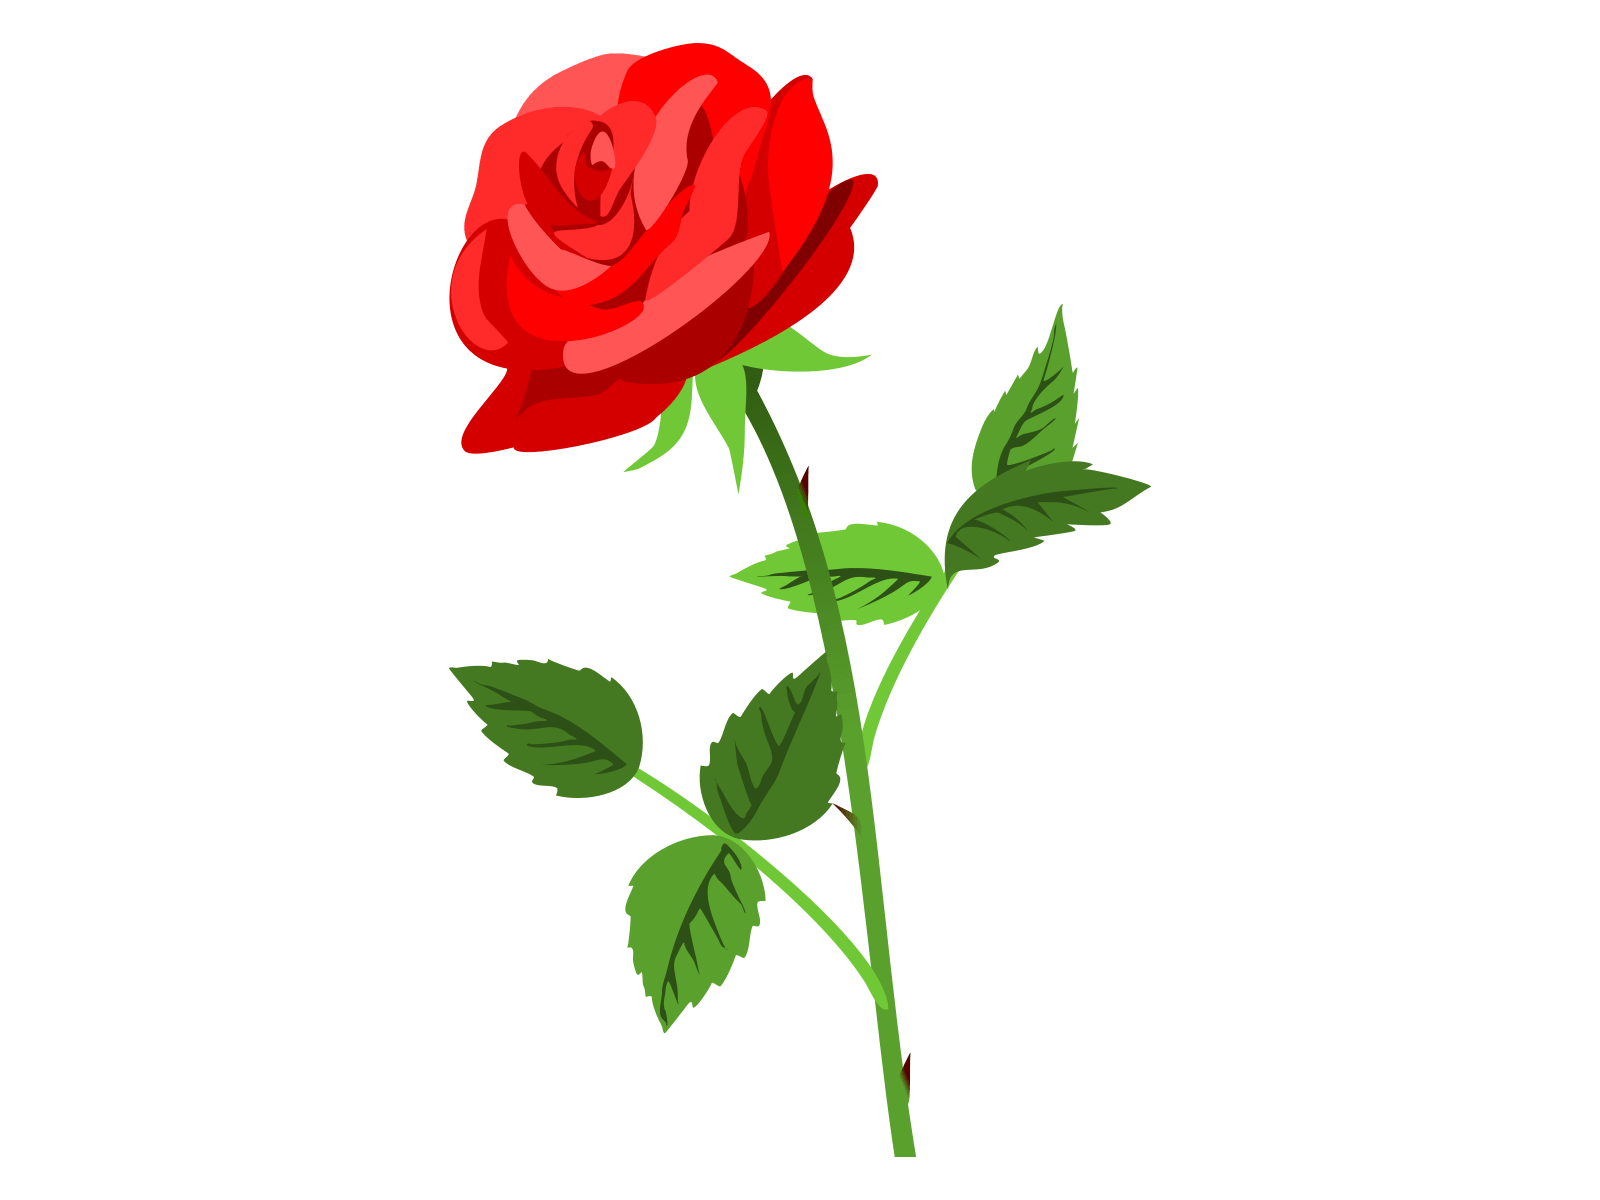 無料 バラ 薔薇 の花イラスト 母の日 誕生日 お祝いにも使えます かわいい無料イラスト イラストの描き方